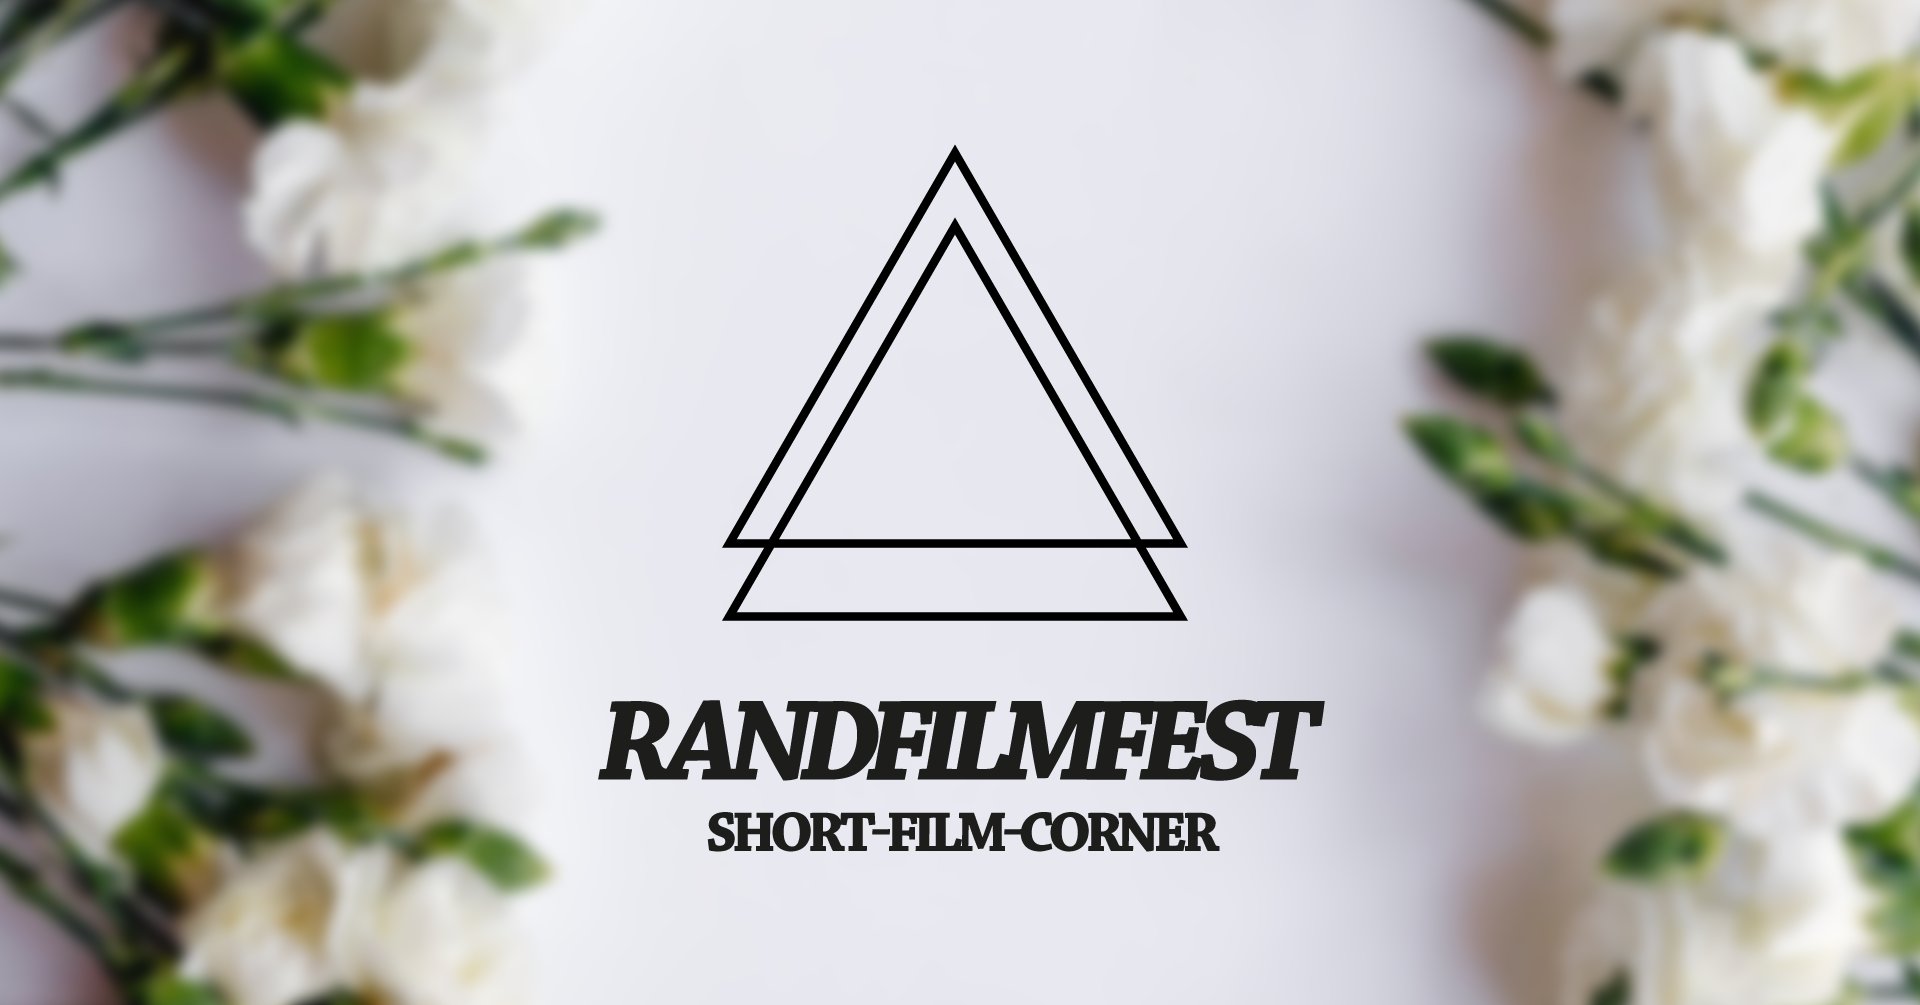 Randfilmfest Short-Film-Corner - Part 2